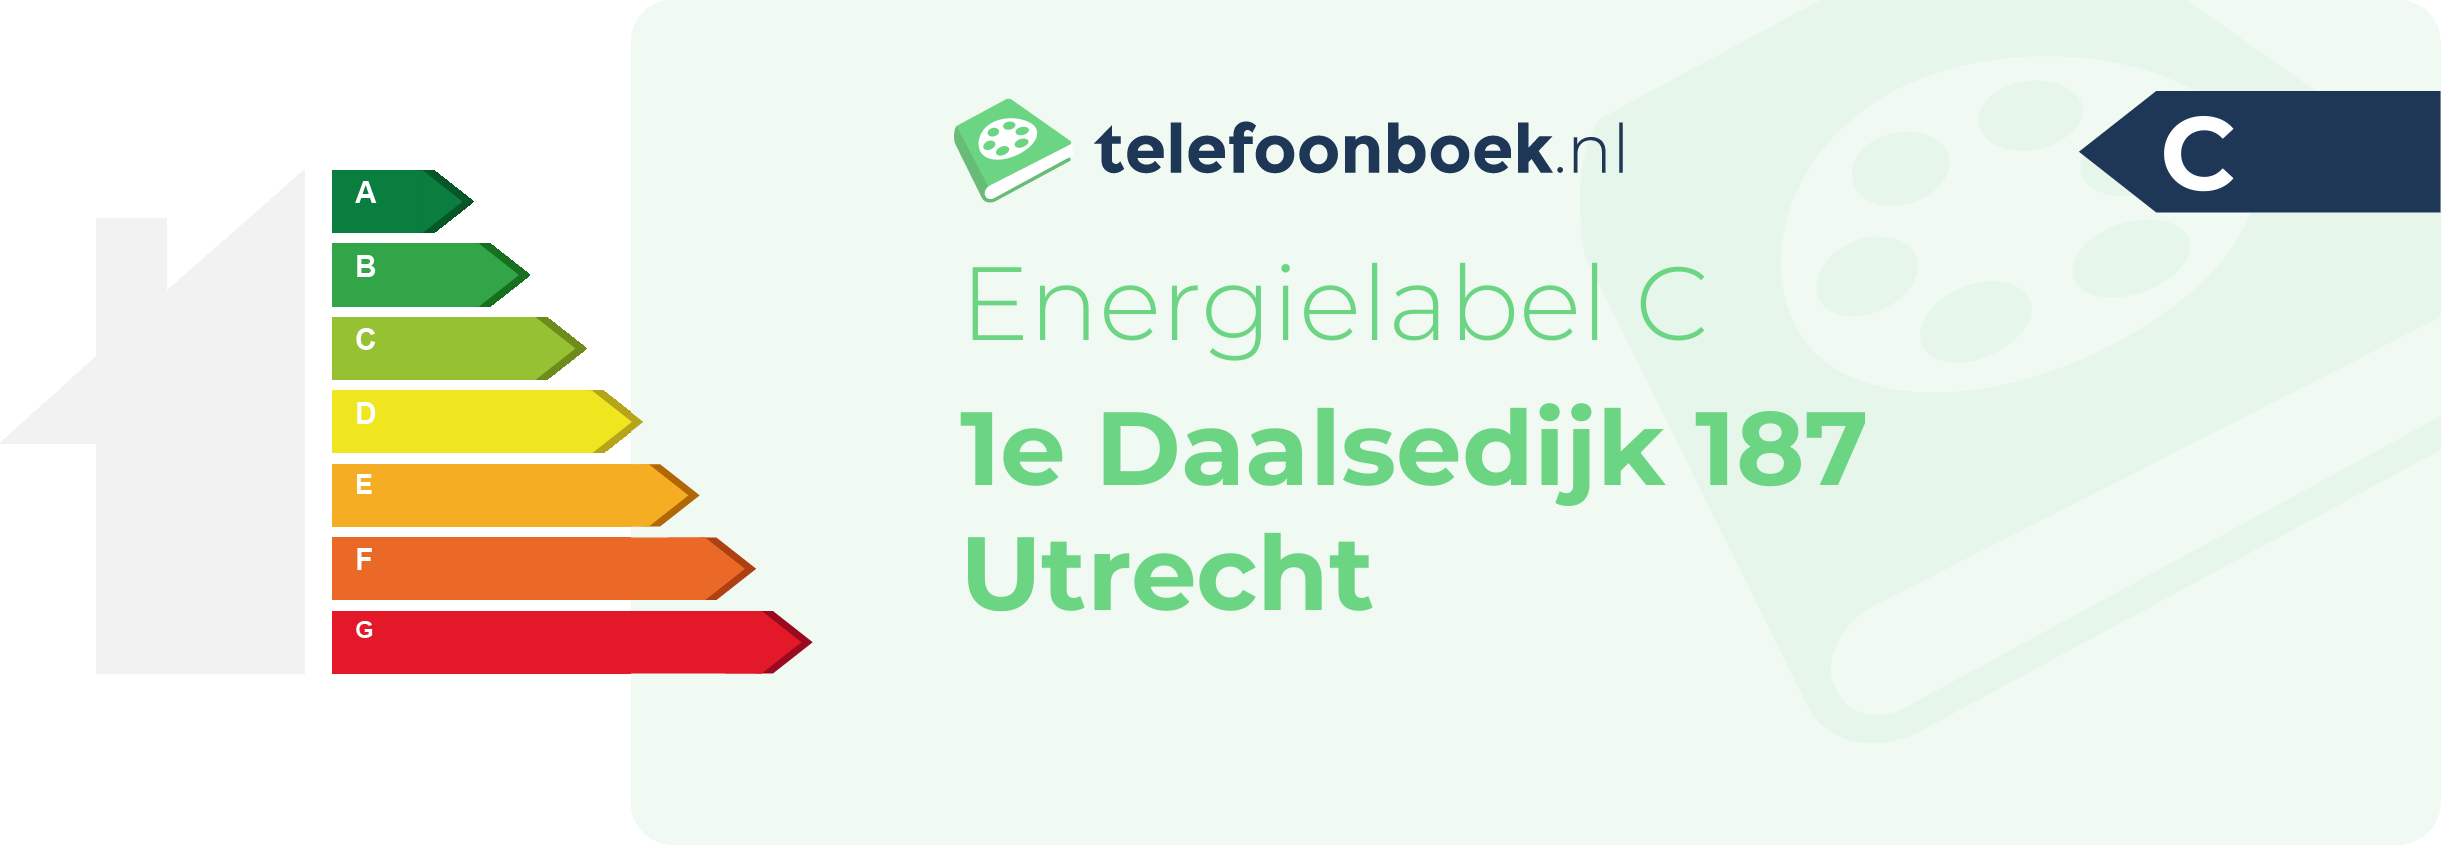 Energielabel 1e Daalsedijk 187 Utrecht